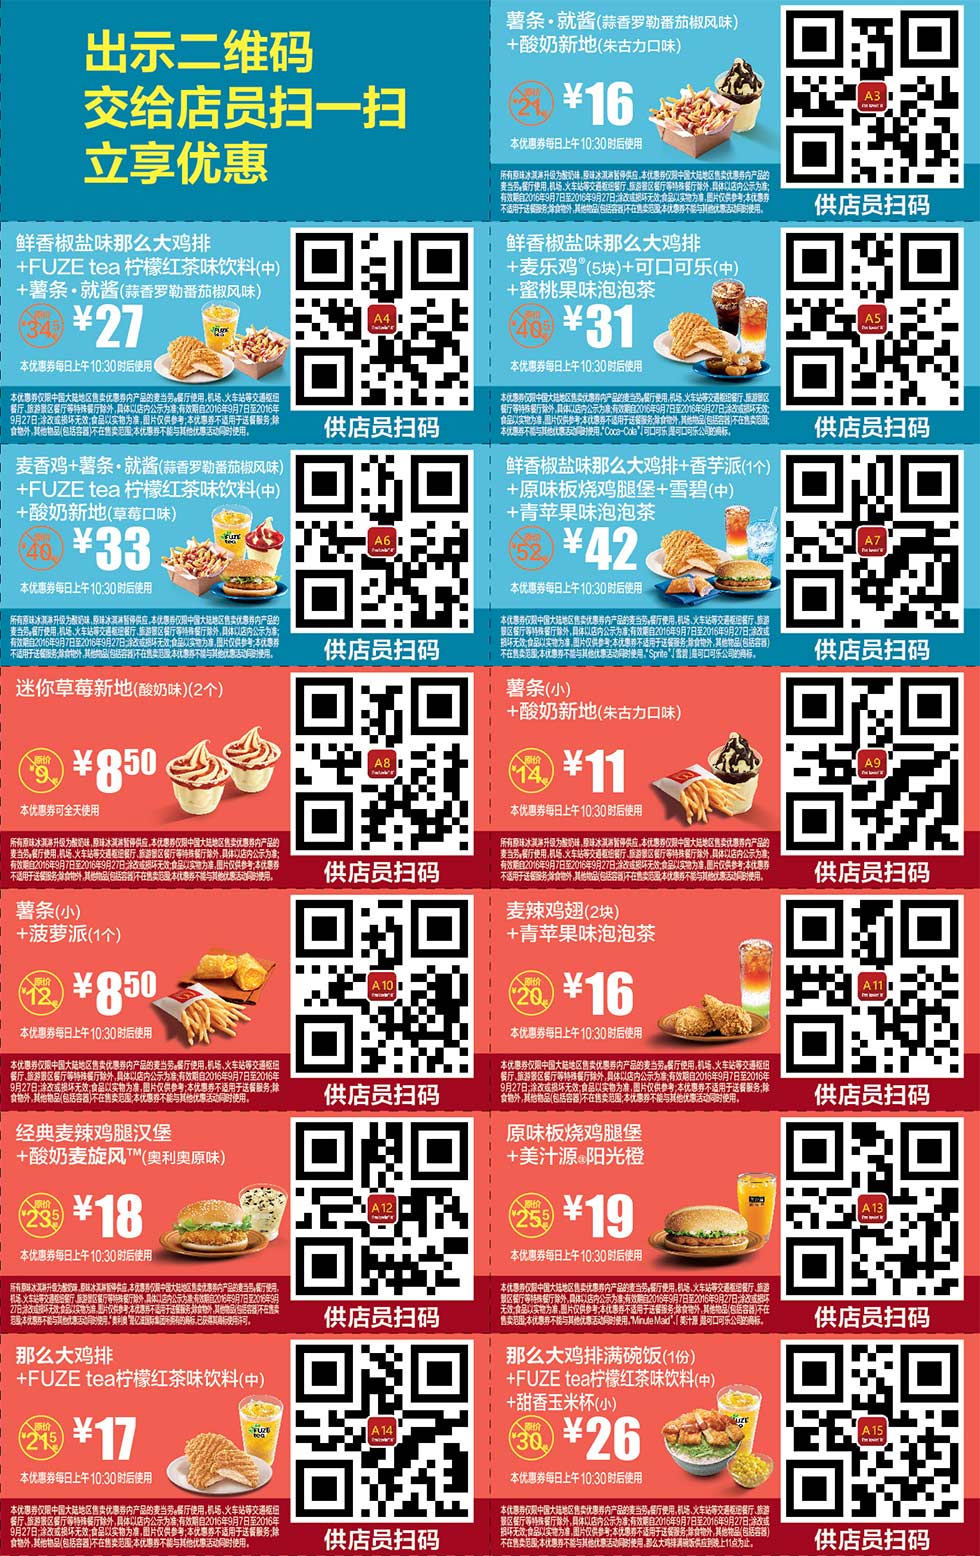 麦当劳优惠券:2016年9月份麦当劳优惠券手机版整张版本，出示二维码立享优惠 有效期2016年9月07日-2016年9月27日 使用范围:麦当劳中国大陆地区餐厅